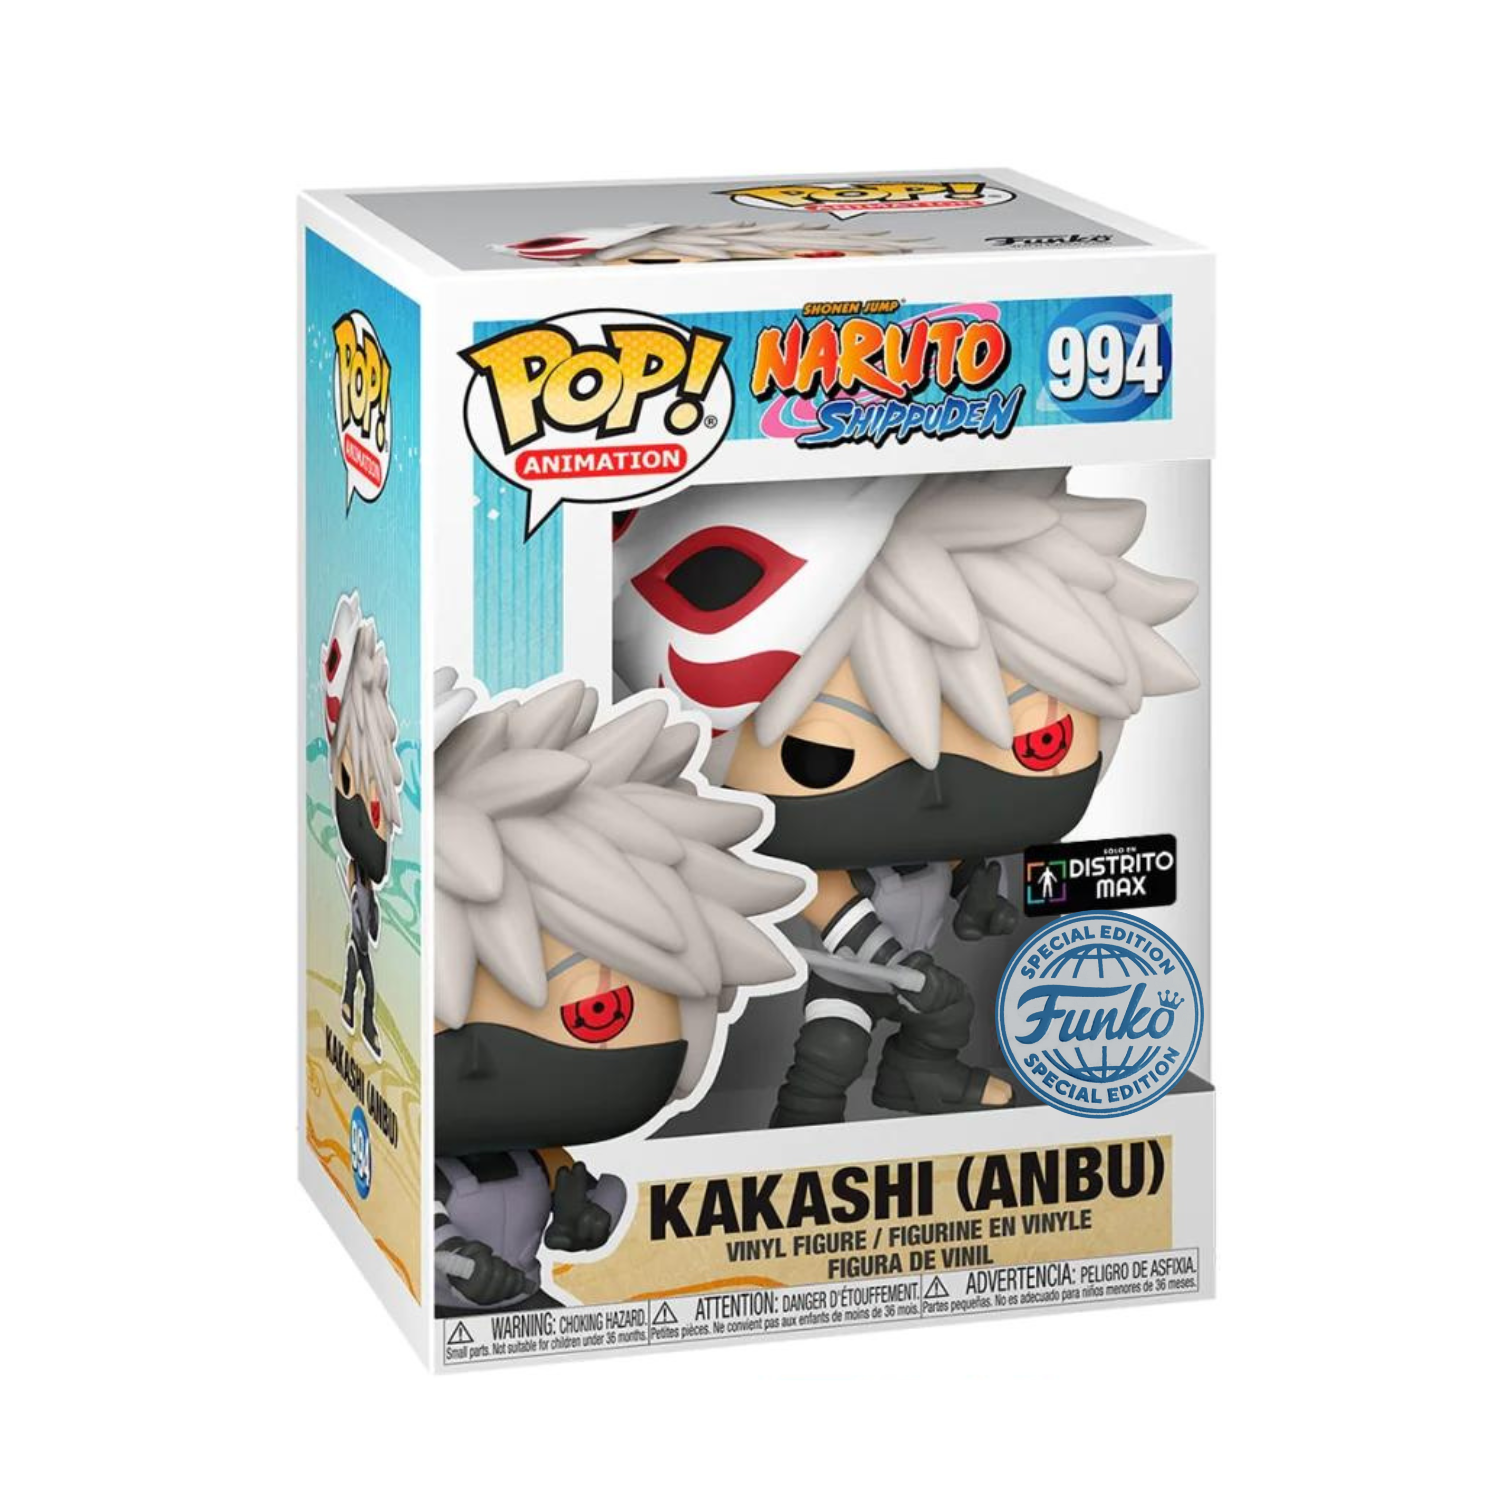 Funko Kakashi (Anbu) 994 Distrito Max Special Edition (Naruto Shippuden)